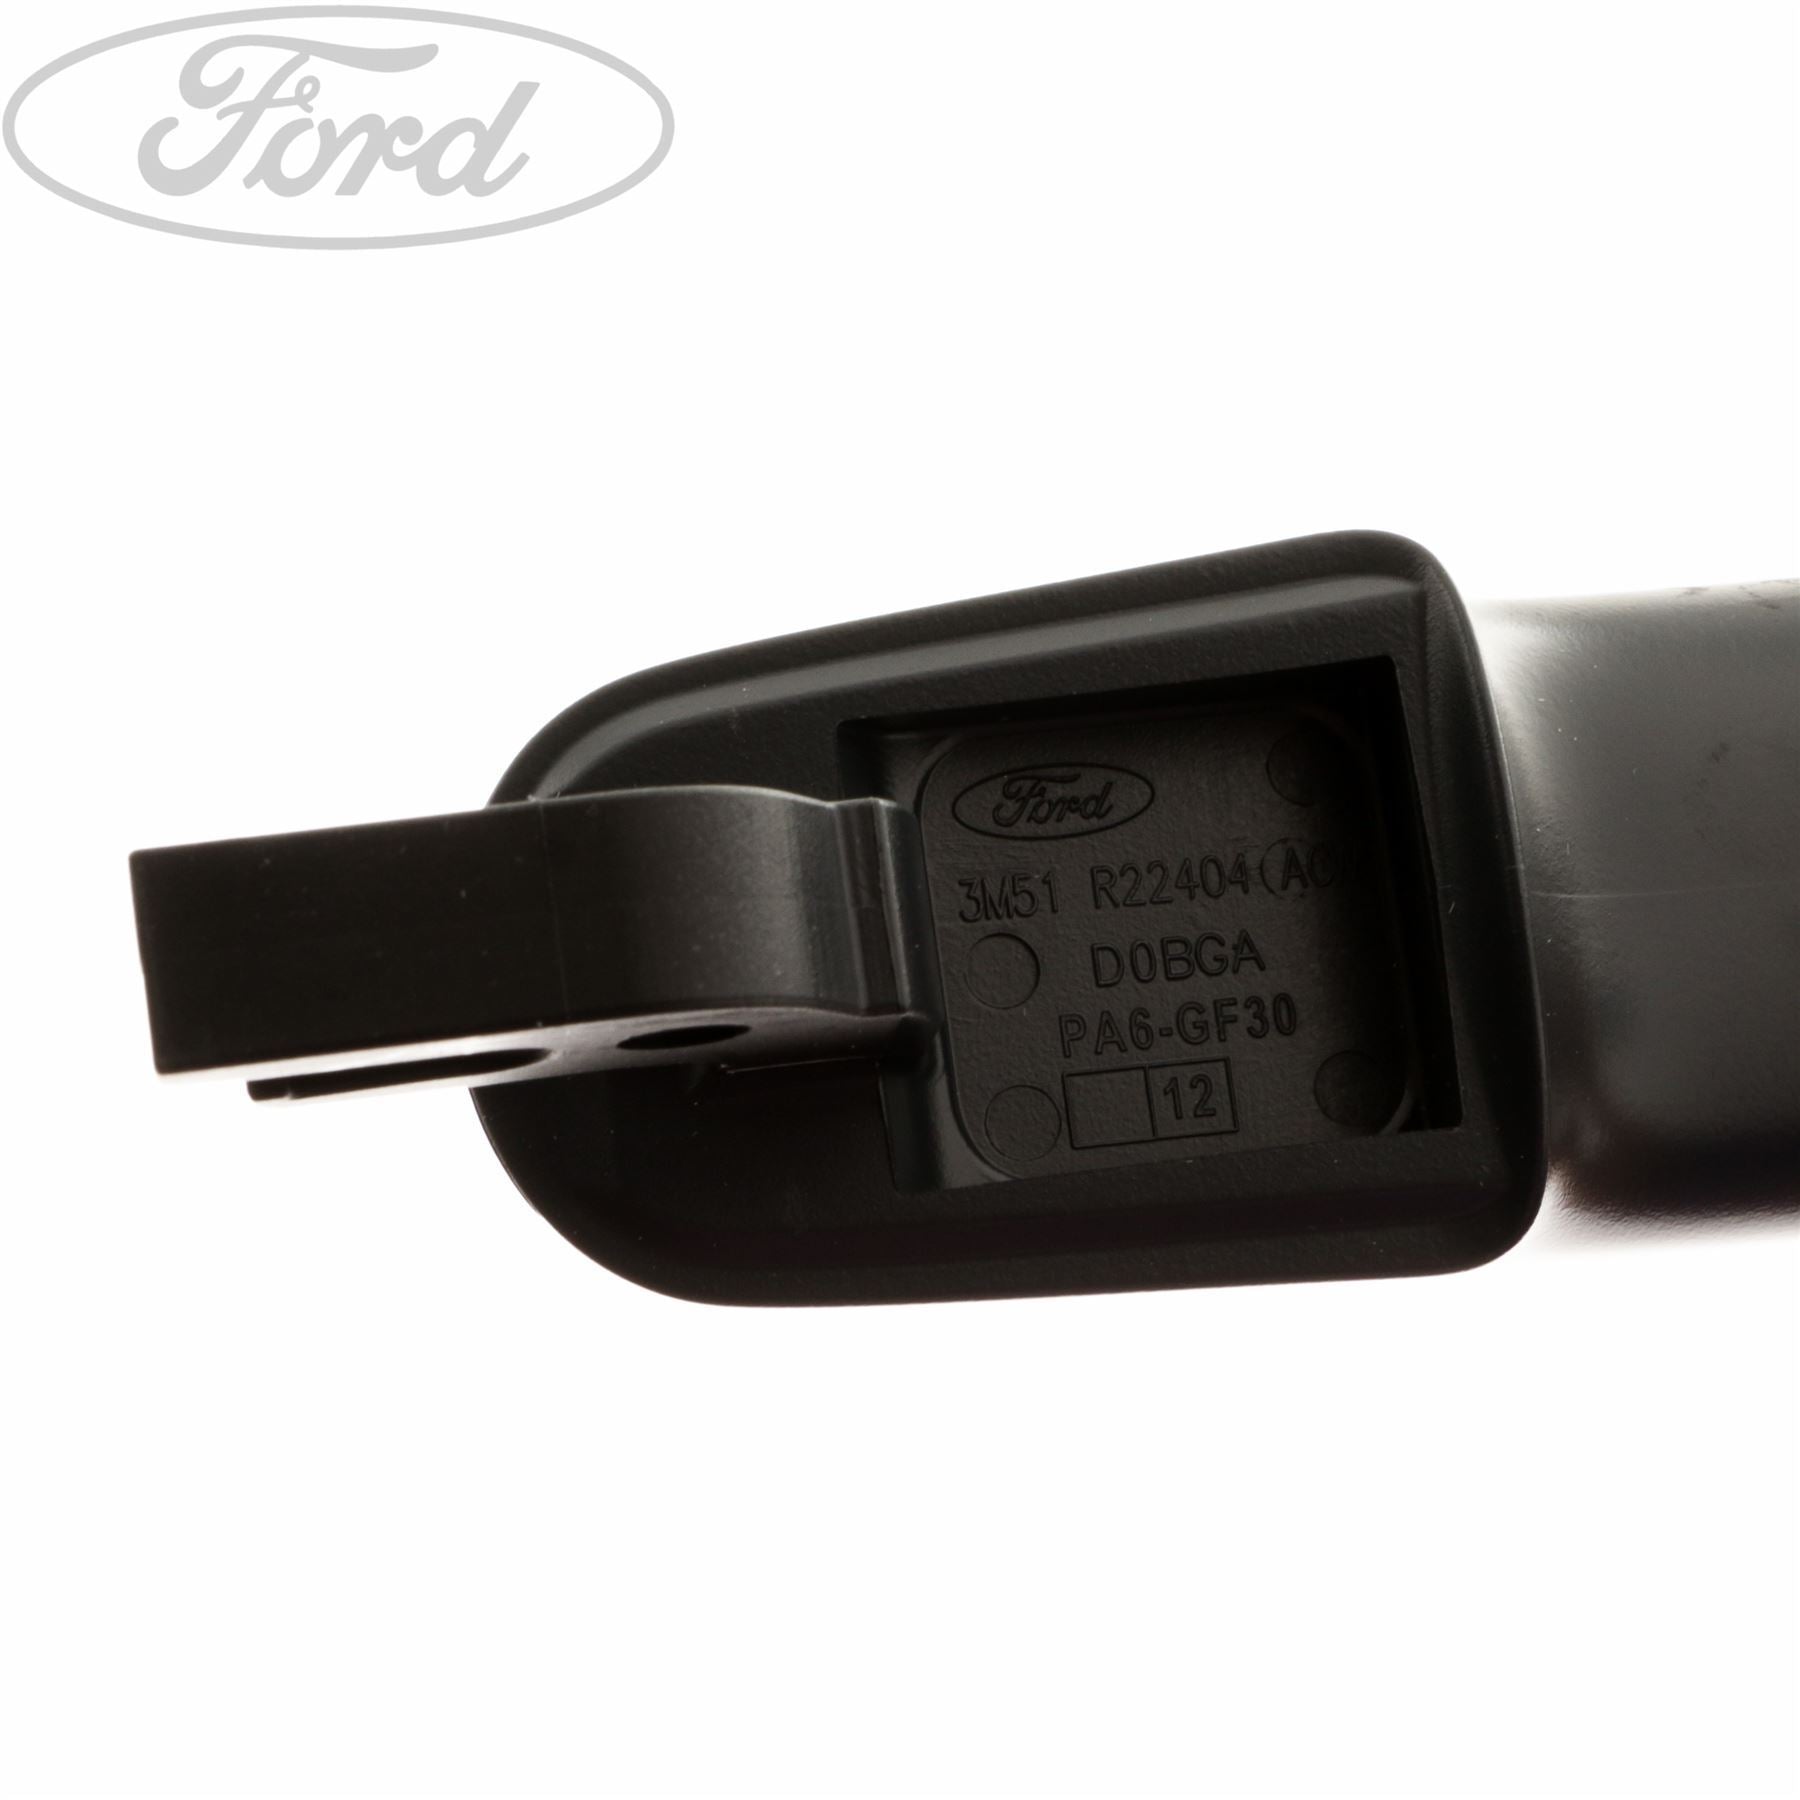 Ford Focus - Türgriff verkratzt - Kosten? (Auto, Auto und Motorrad, KFZ)